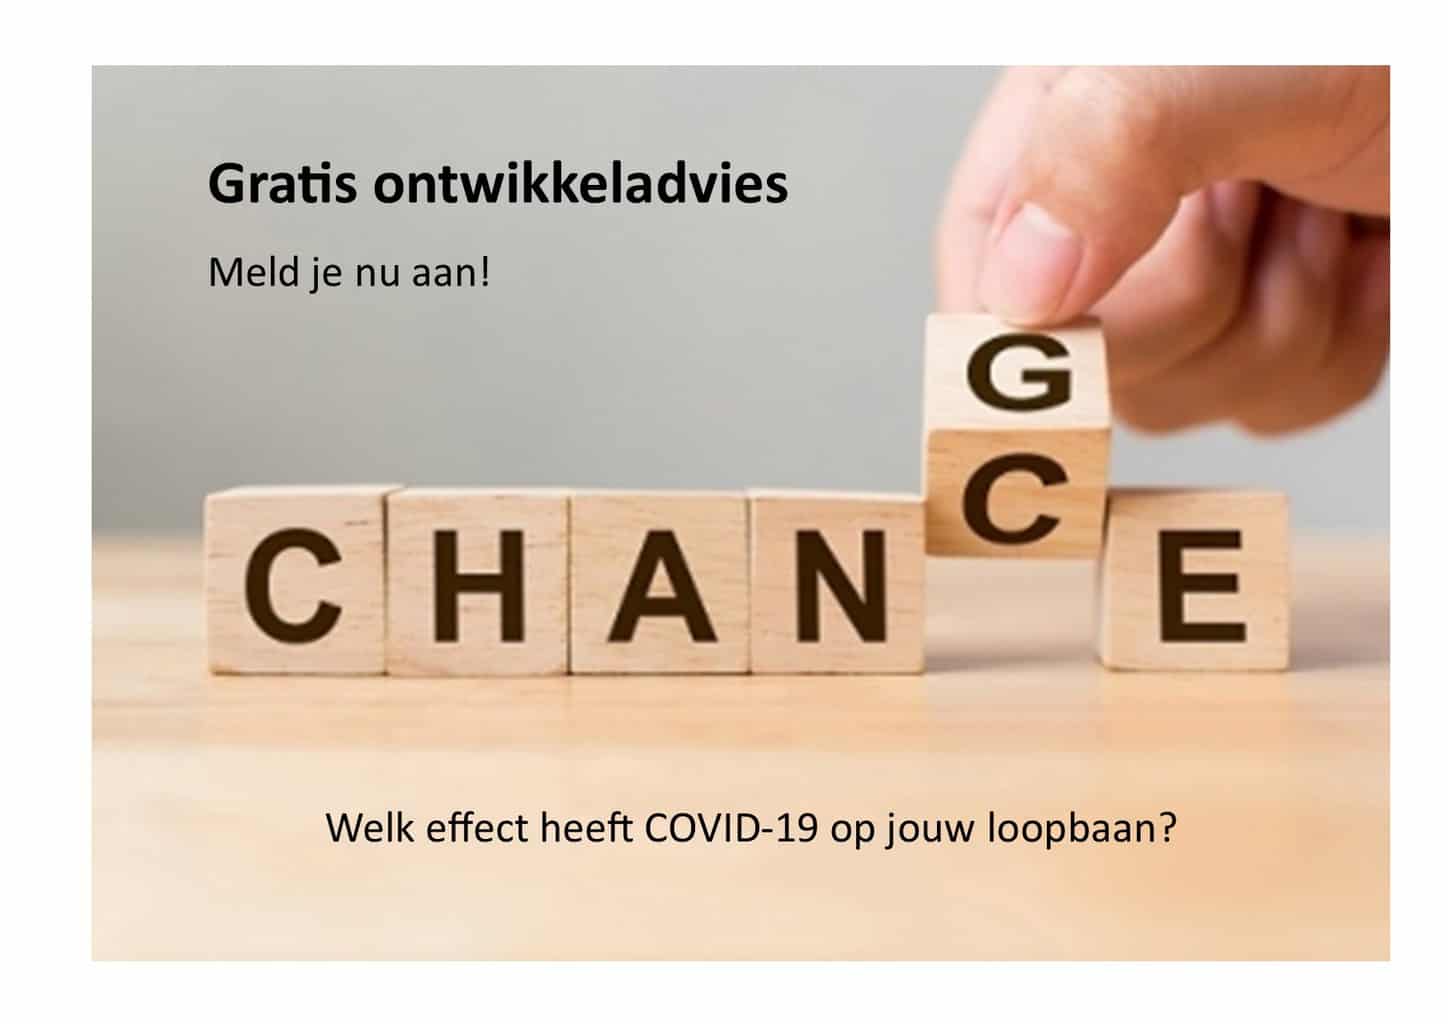 Onwikkeladvies gratis 2020 subsidie loopbaanadvies Noloc Winterswijk Achterhoek